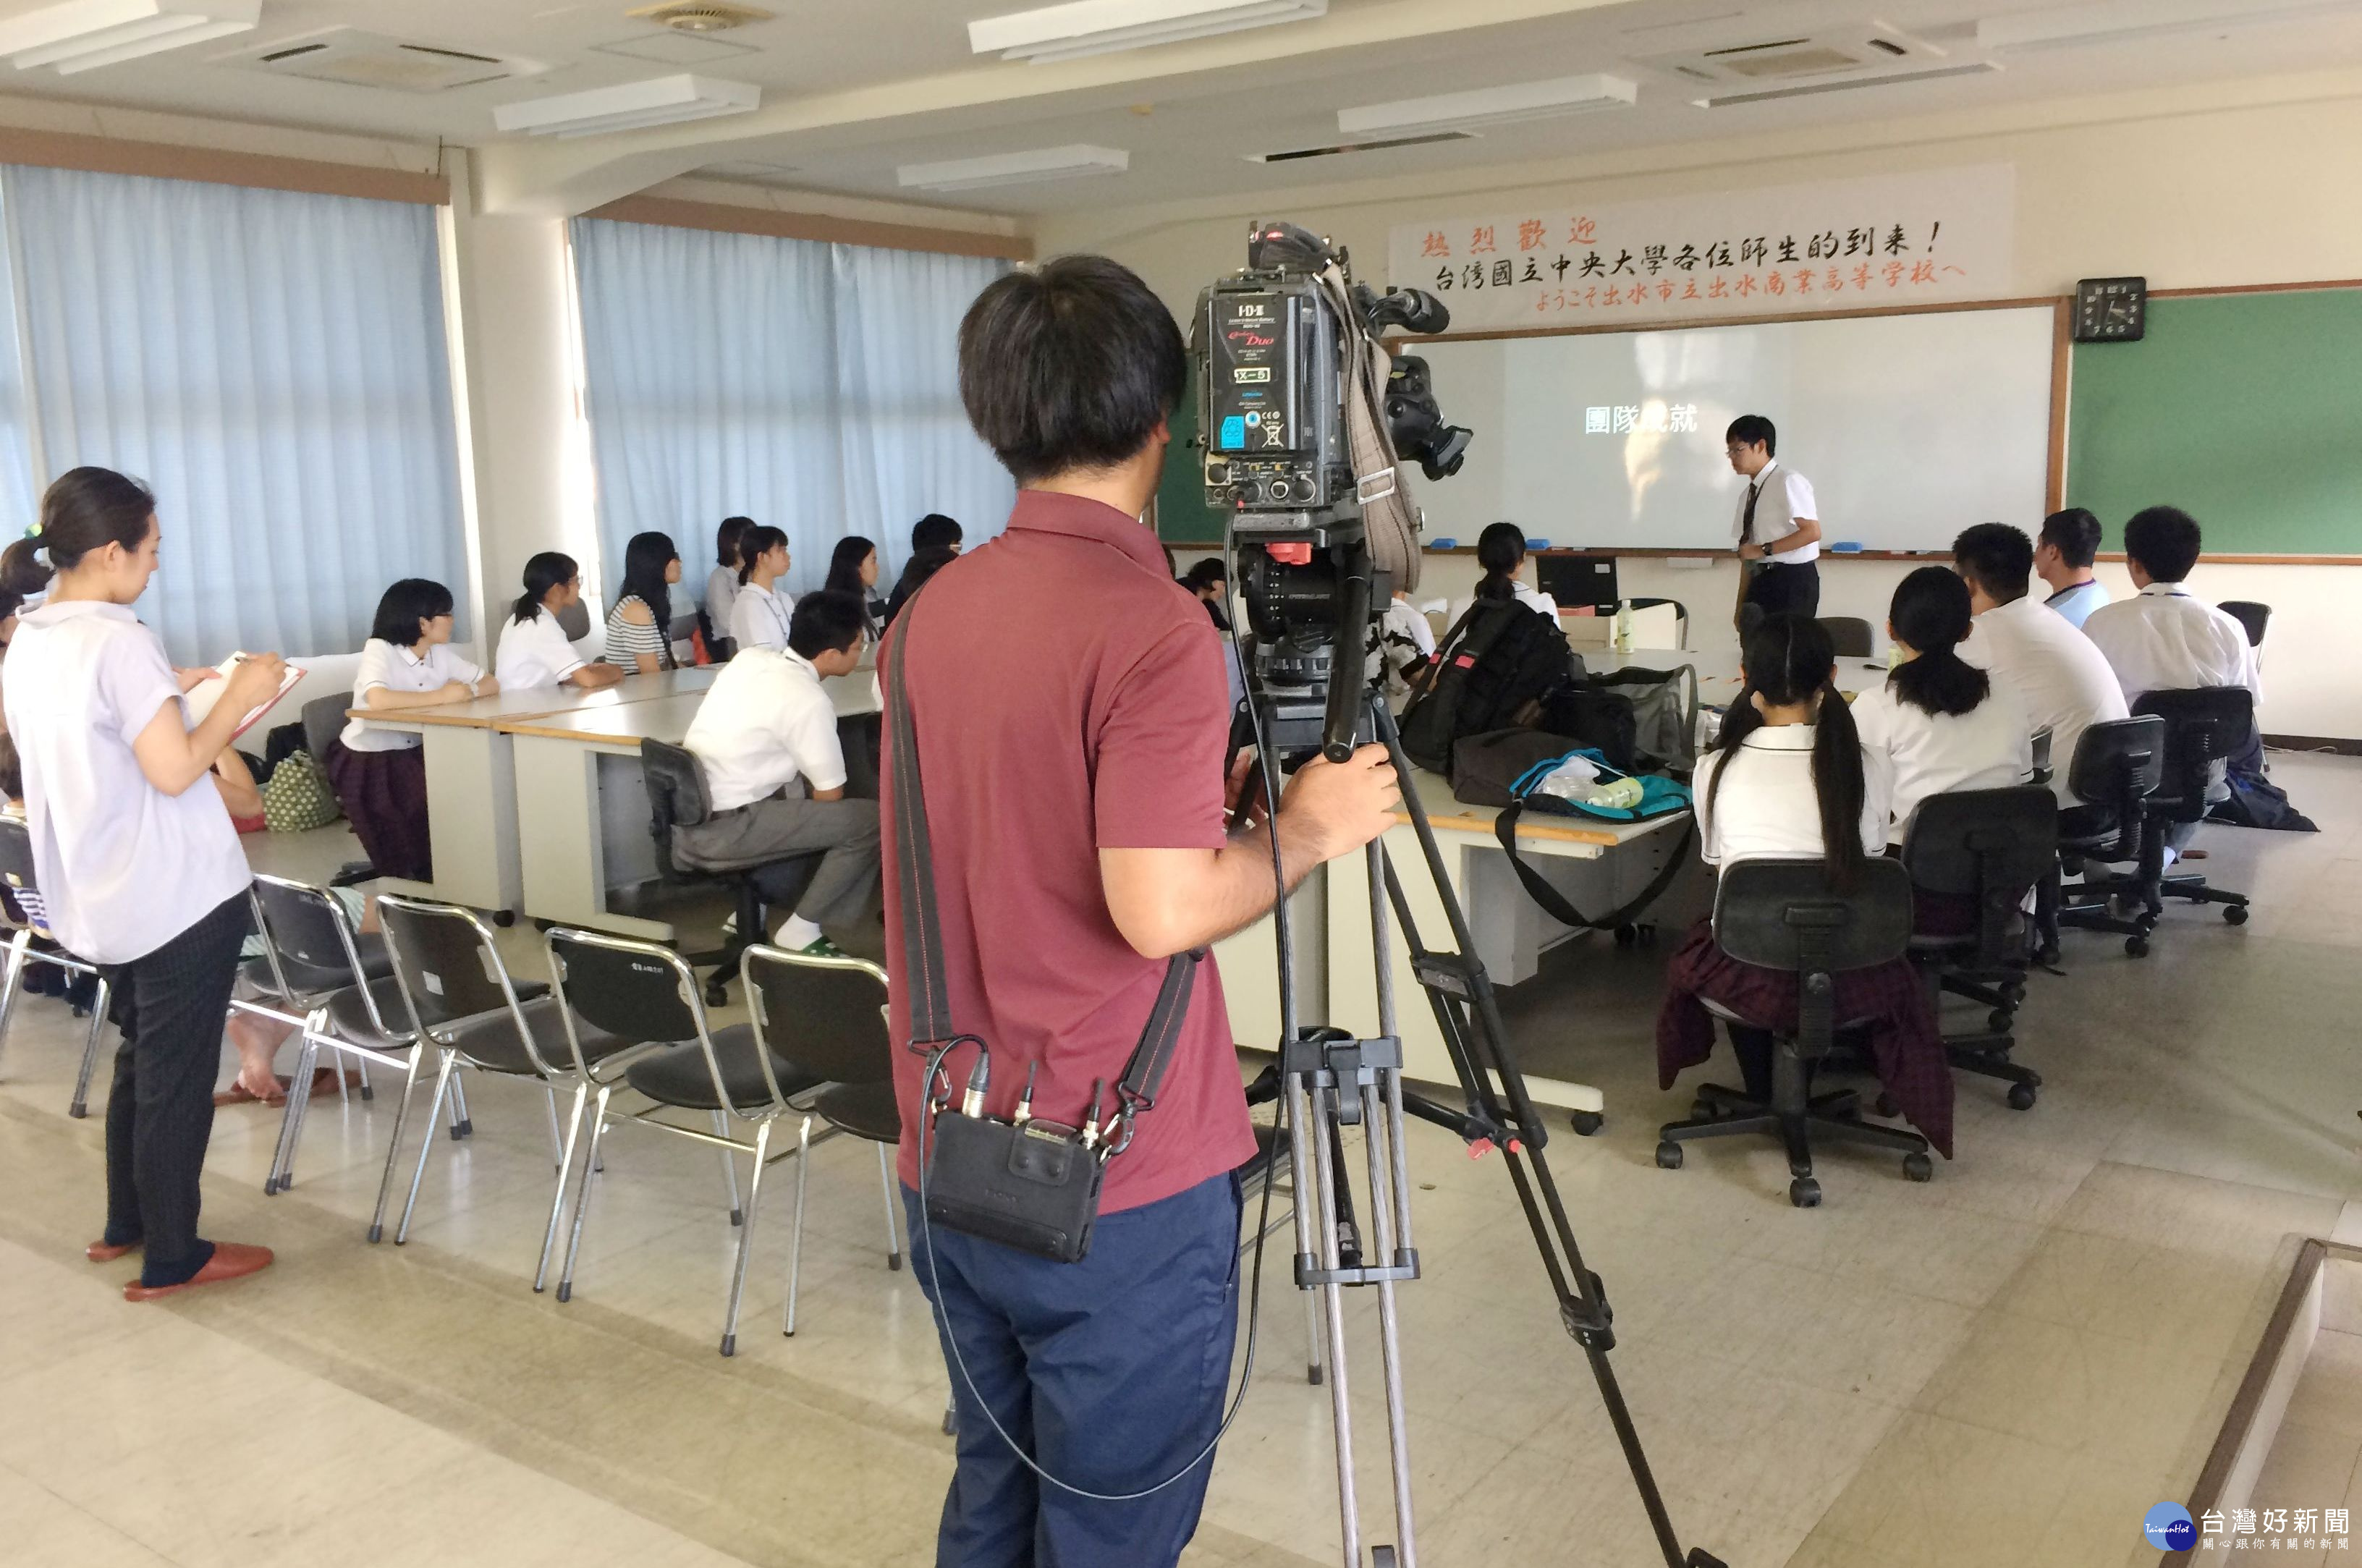 中央創遊社前往出水商業高等学校參訪與交流，南日本放送電視台MBC派員隨行採訪。